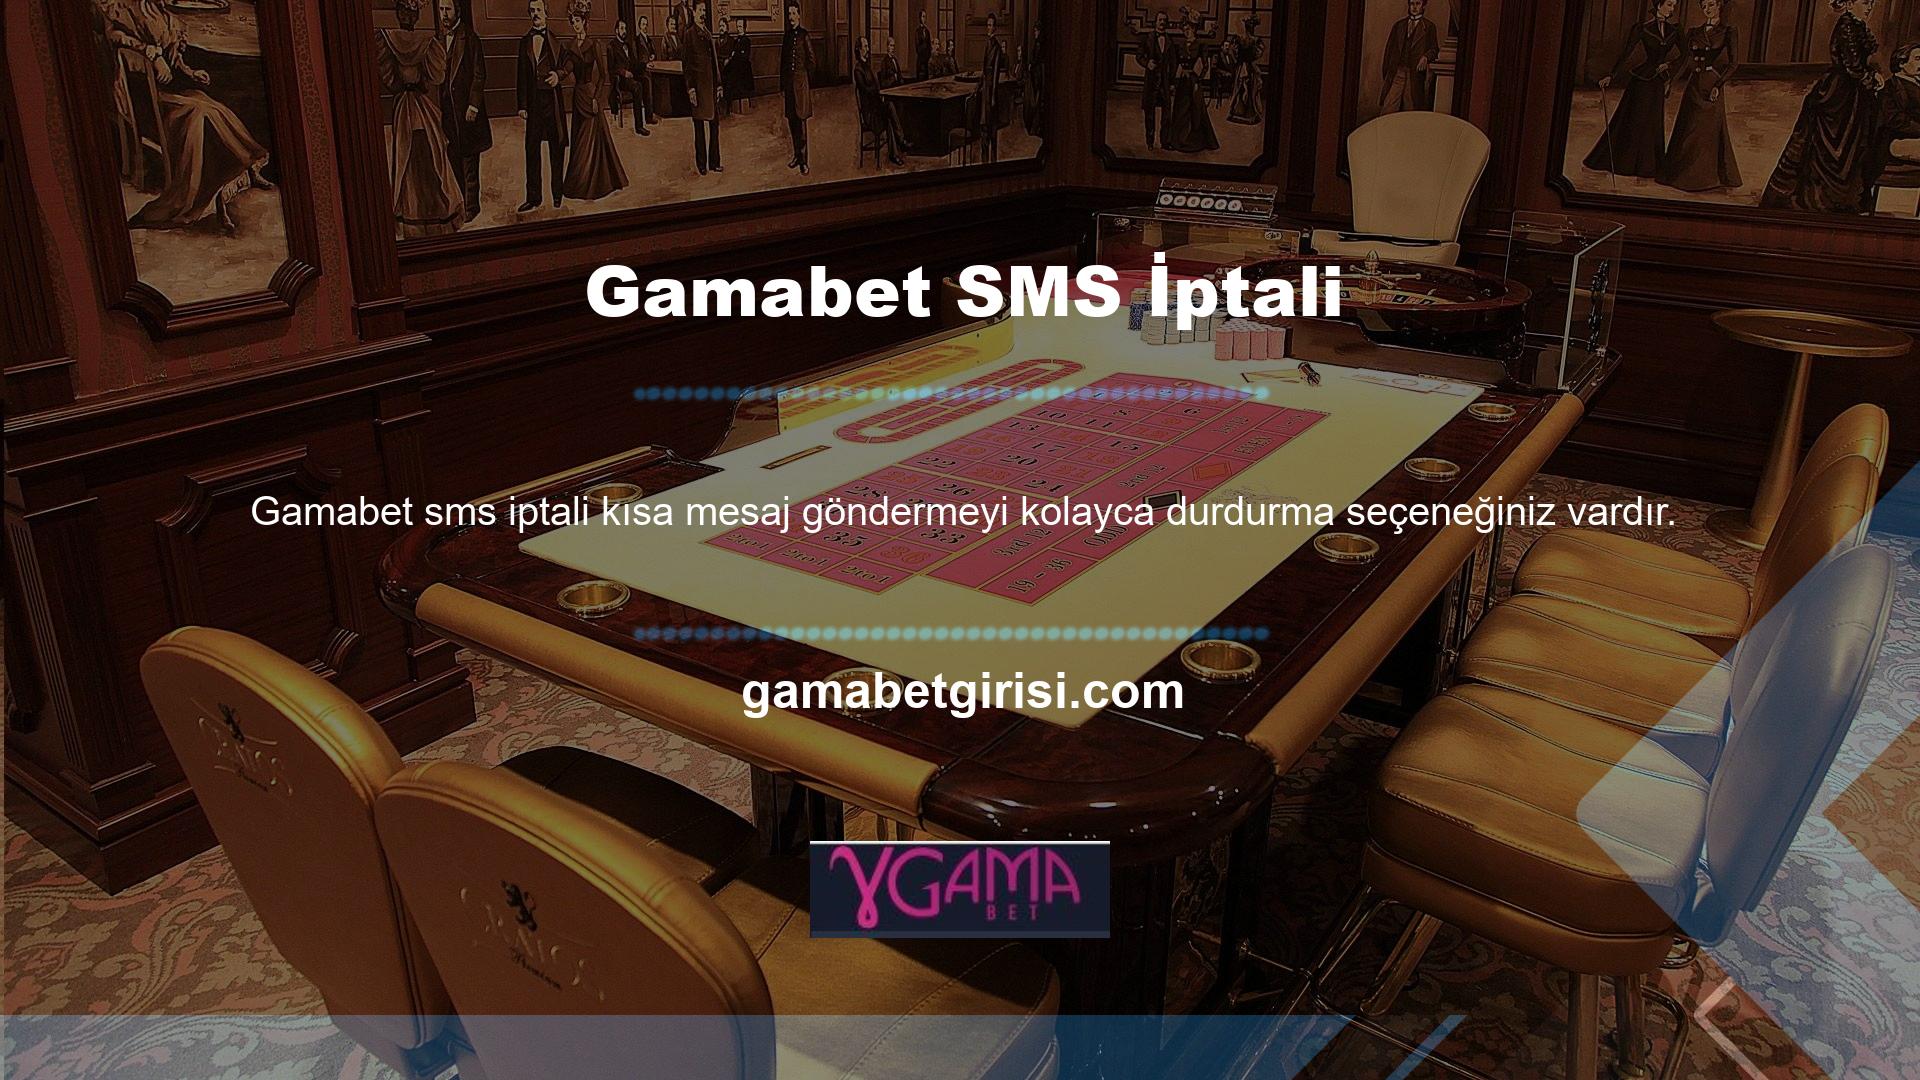 Elbette Gamabet web sitesi bu konuda kullanıcıya inisiyatif sağlıyor